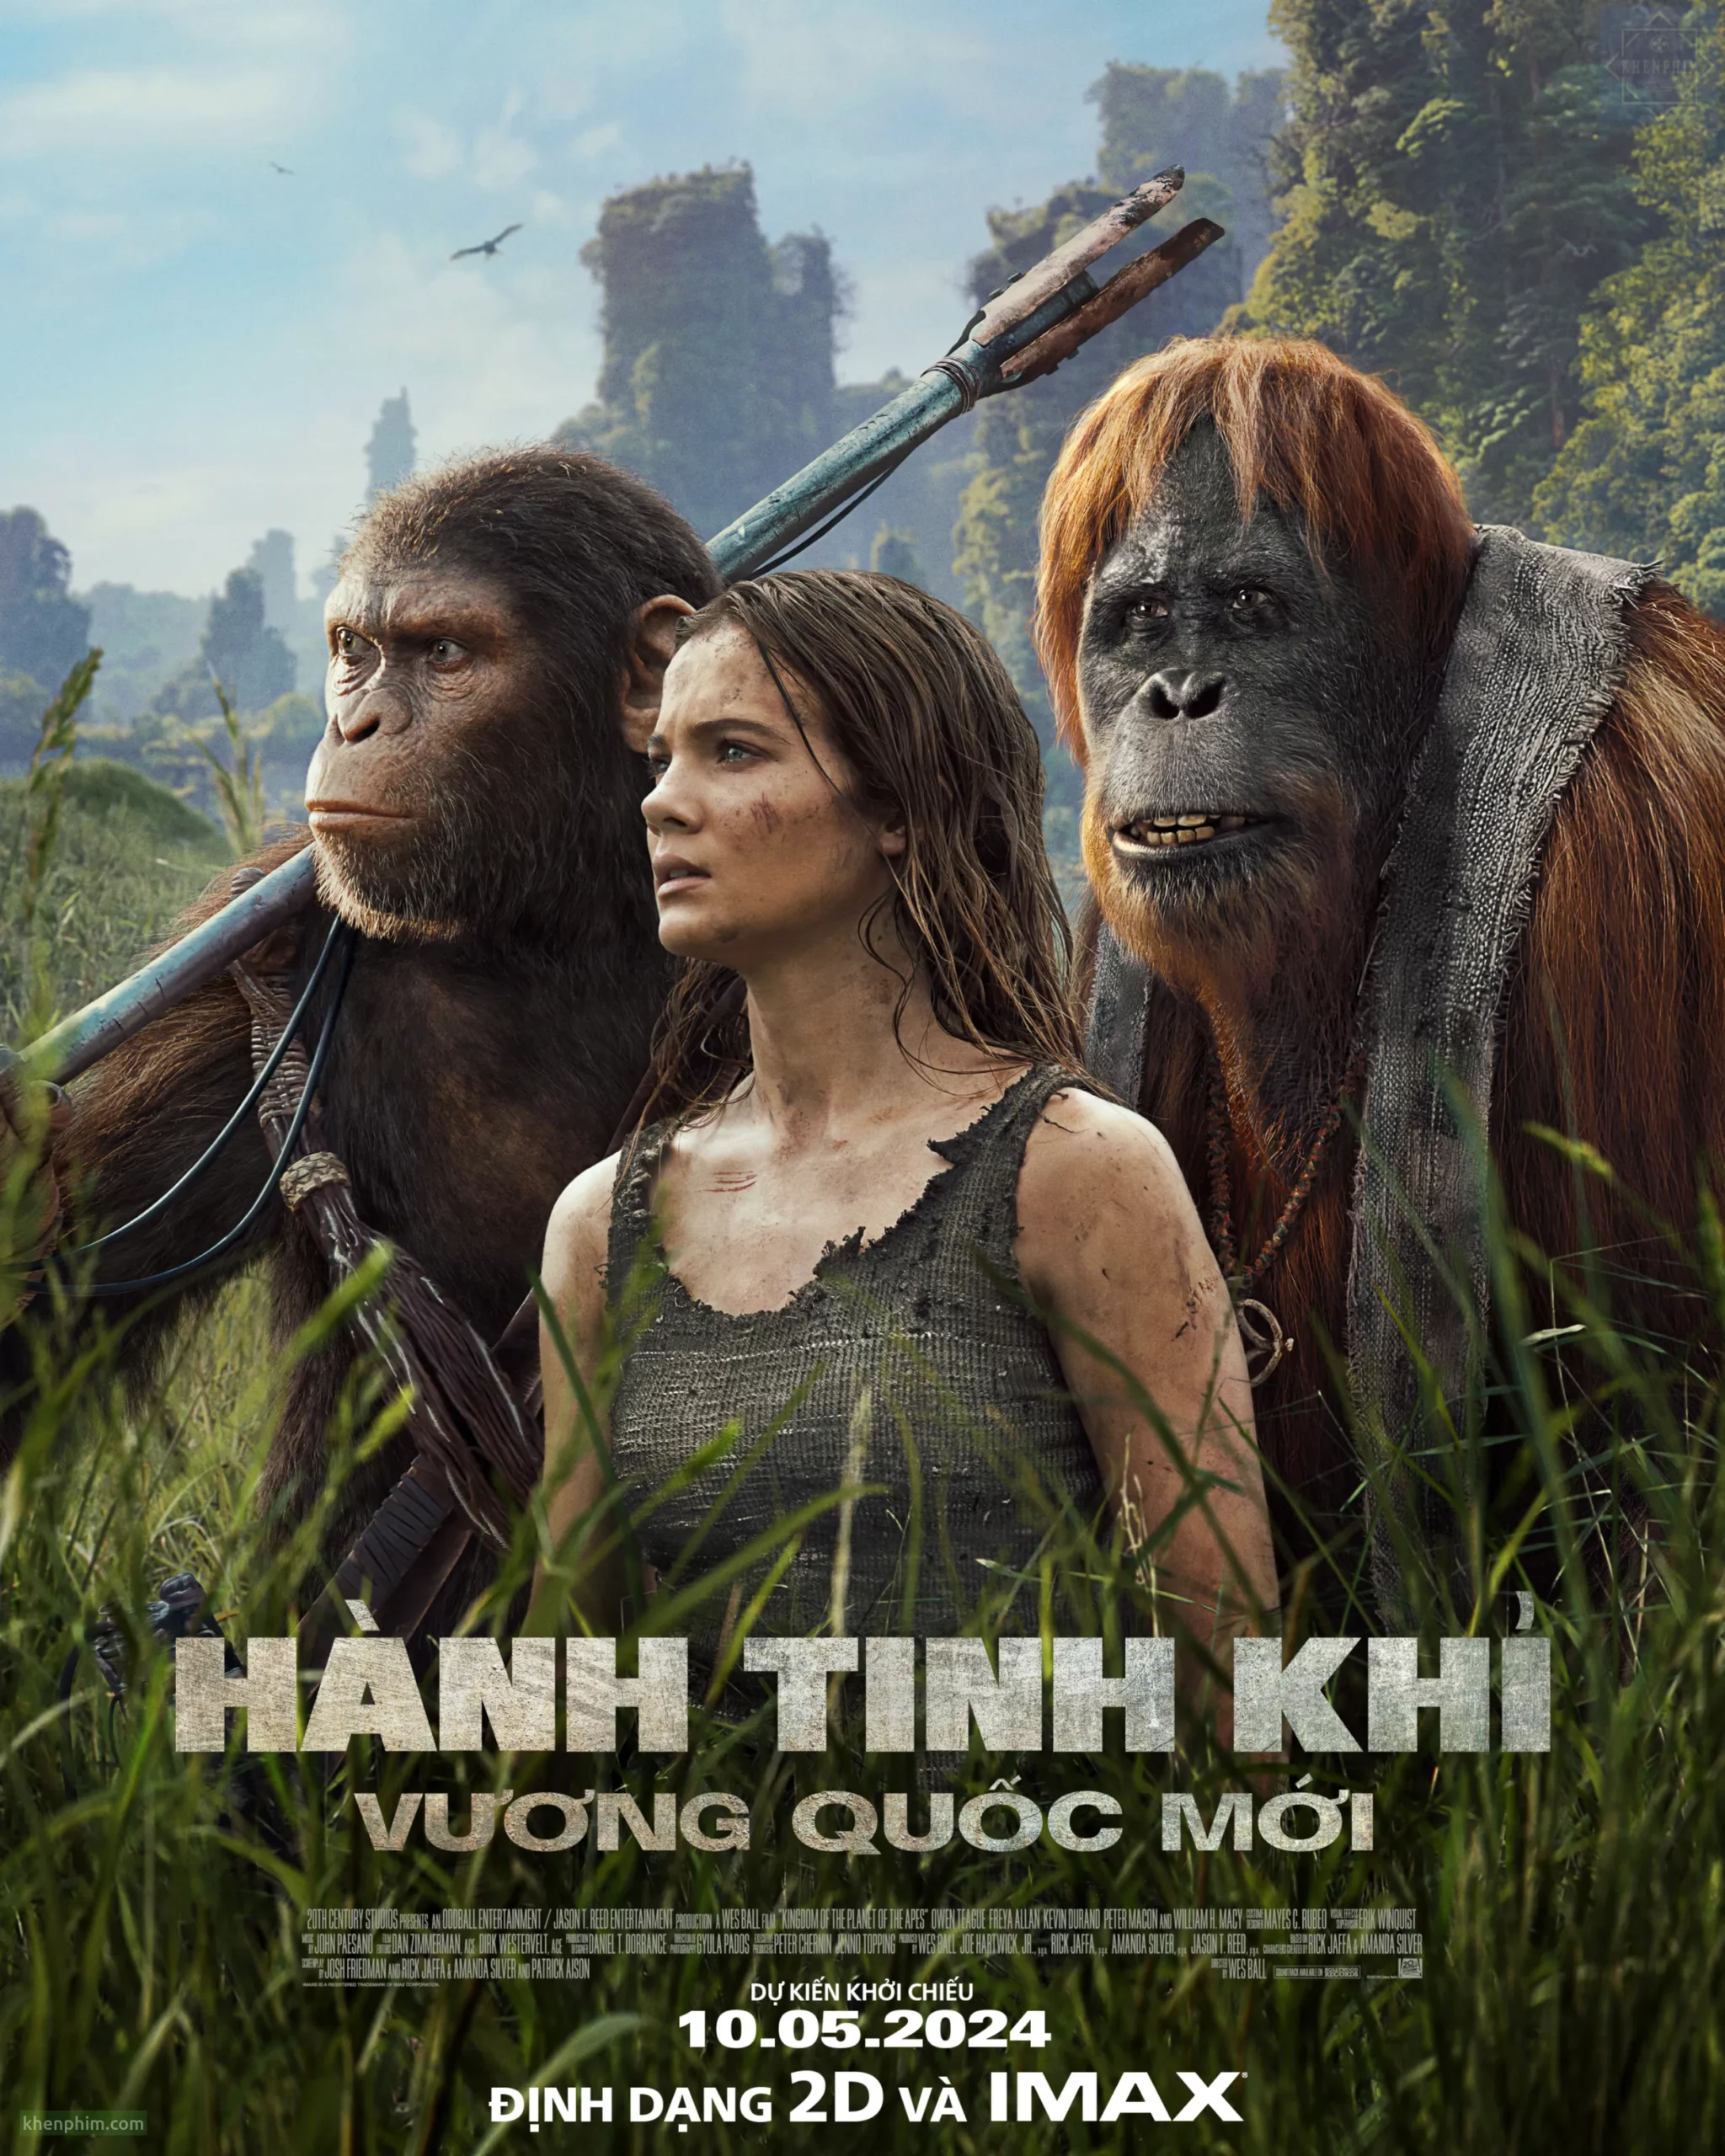 Poster phim Kingdom of the Planet of the Apes (Hành Tinh Khỉ: Vương Quốc Mới)